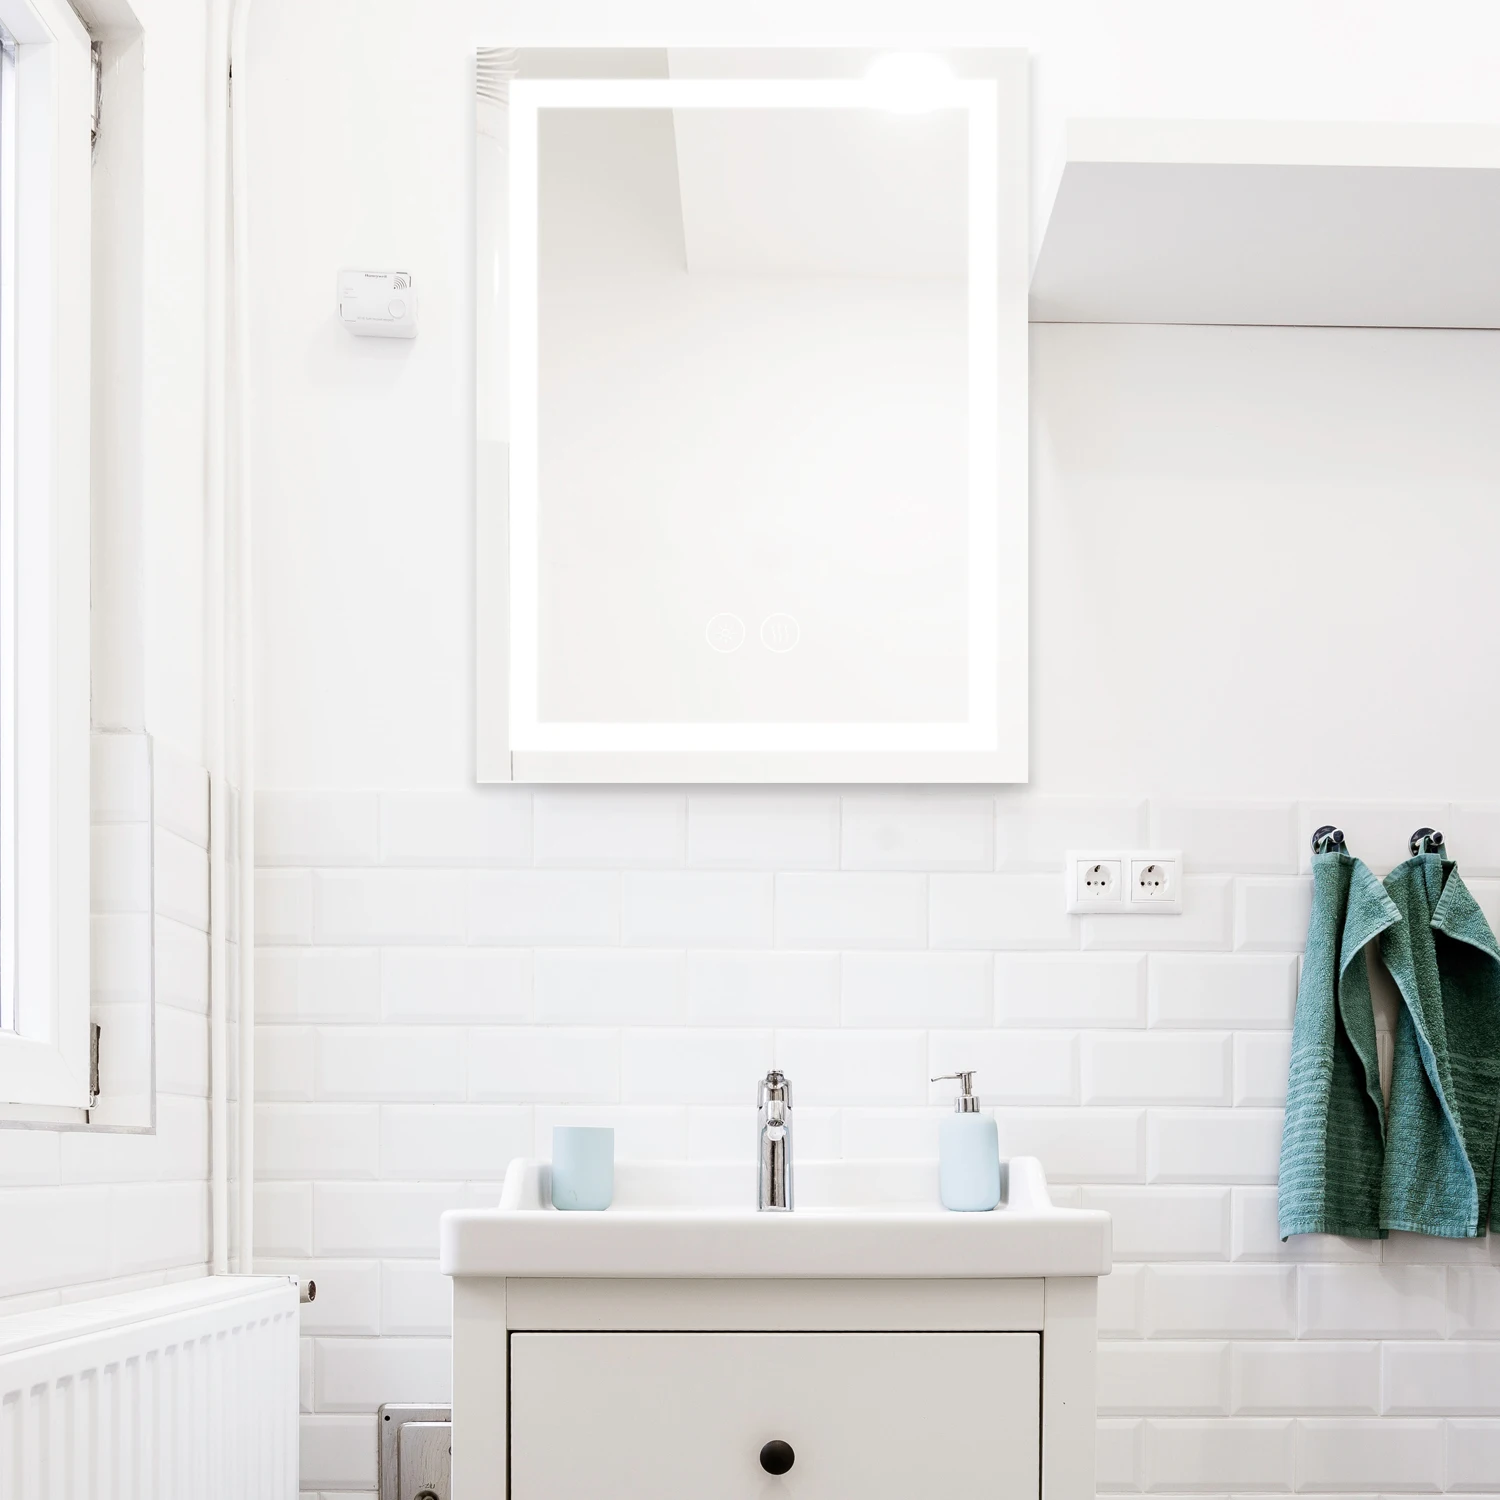 LBYDXD Espejo de baño LED Redondo 50 cm / 60 cm / 70 cm / 80 cm Borde Negro luz Blanca/luz cálida Espejo de Pared de baño antiniebla con botón táctil Inteligente 